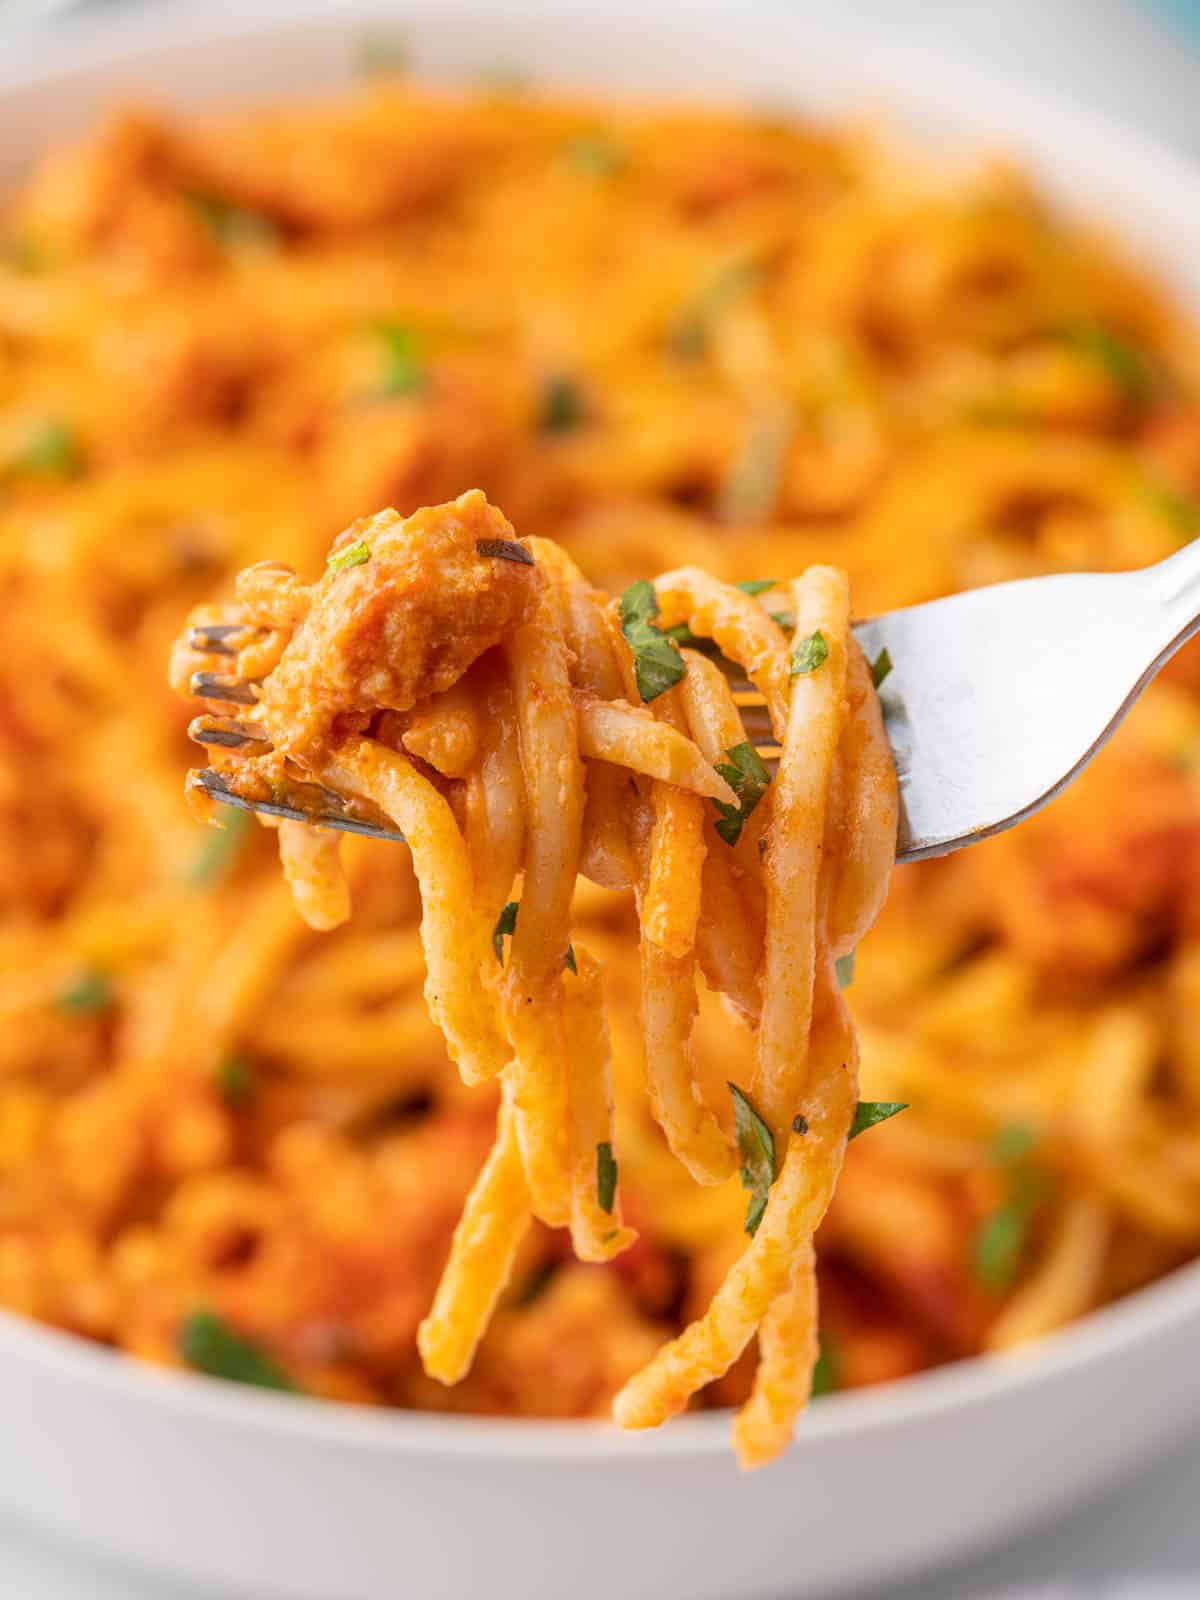 A fork picks of a bite of TikTok Spaghetti.